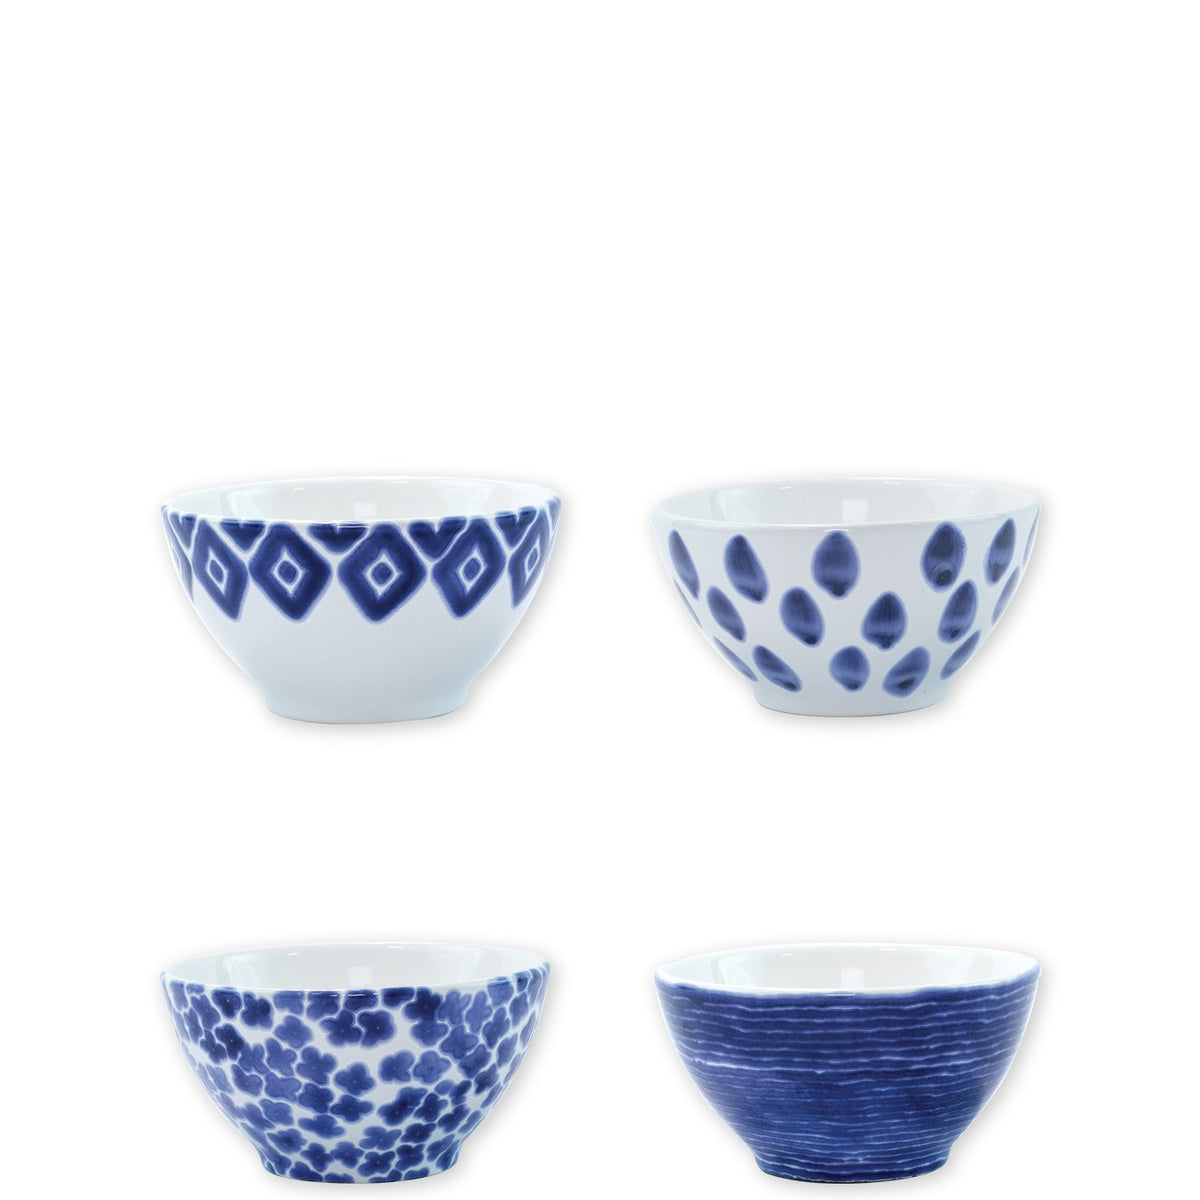 VIETRI: Santorini Assorted Cereal Bowls - Set of 4 - Artistica.com